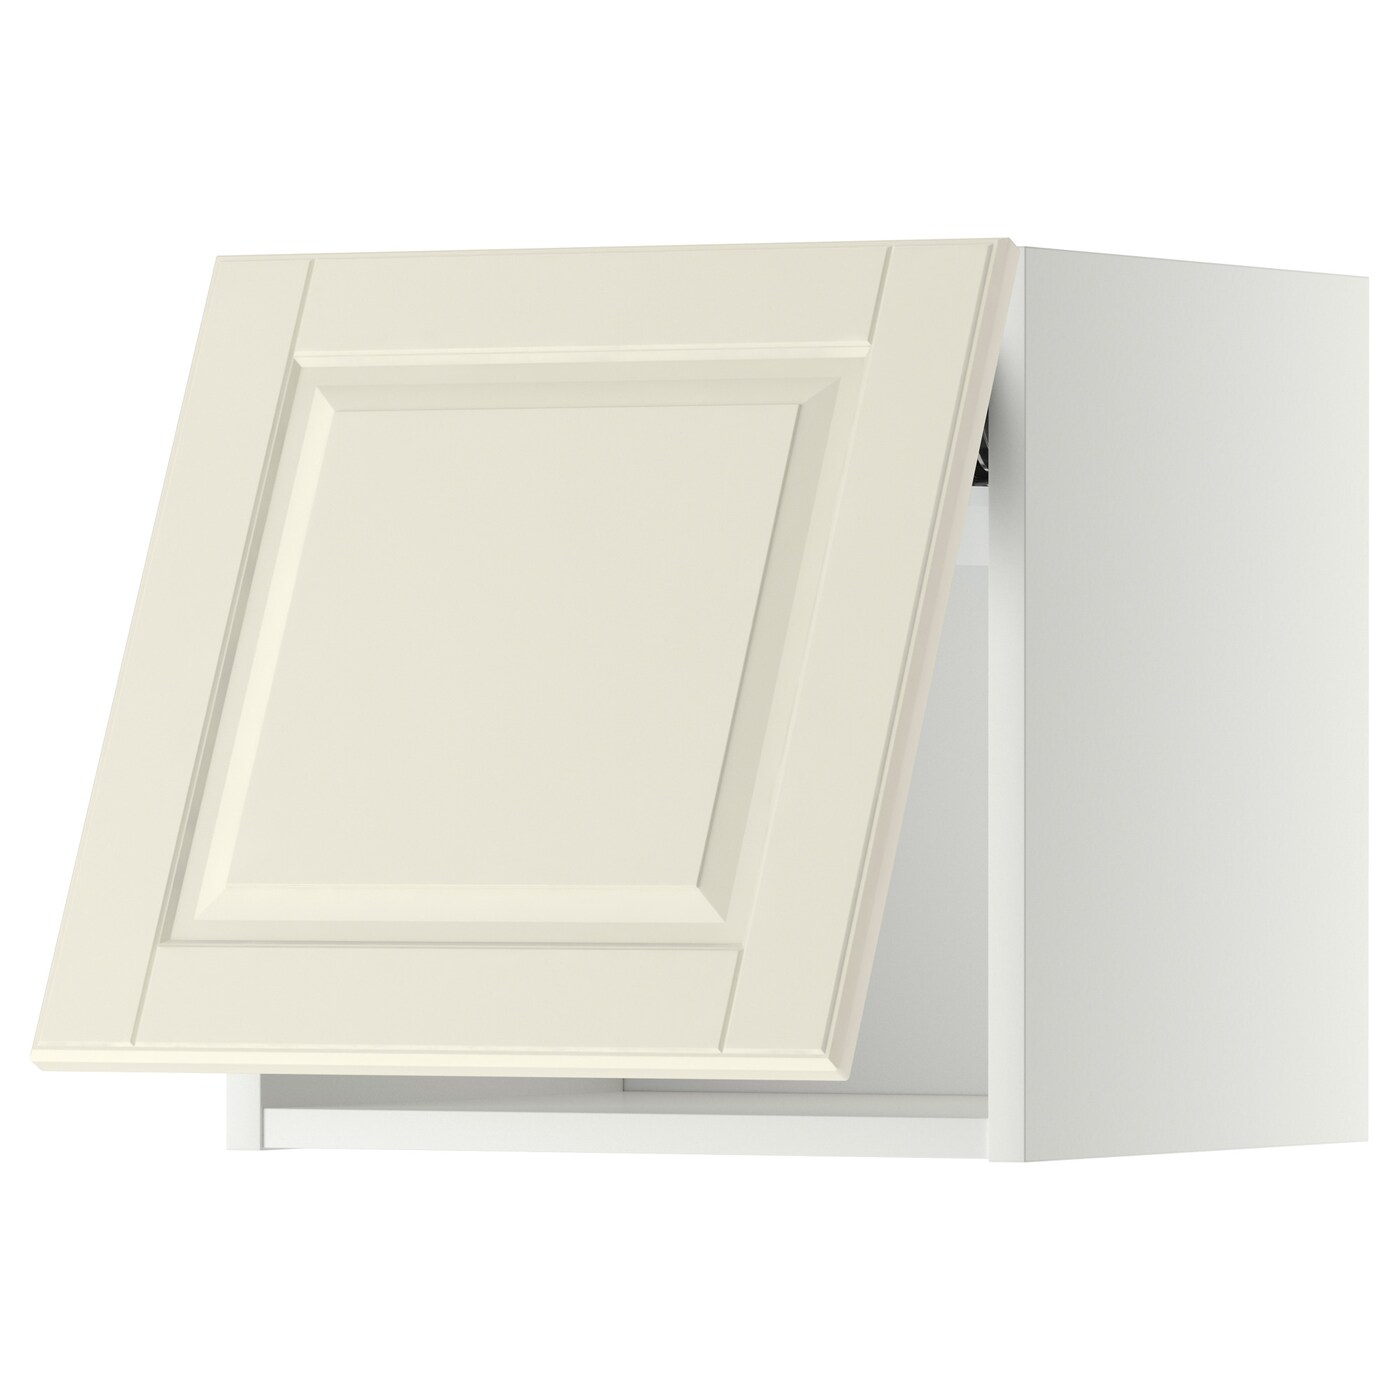 Навесной шкаф - METOD IKEA/ МЕТОД ИКЕА, 40х40 см, белый/кремовый